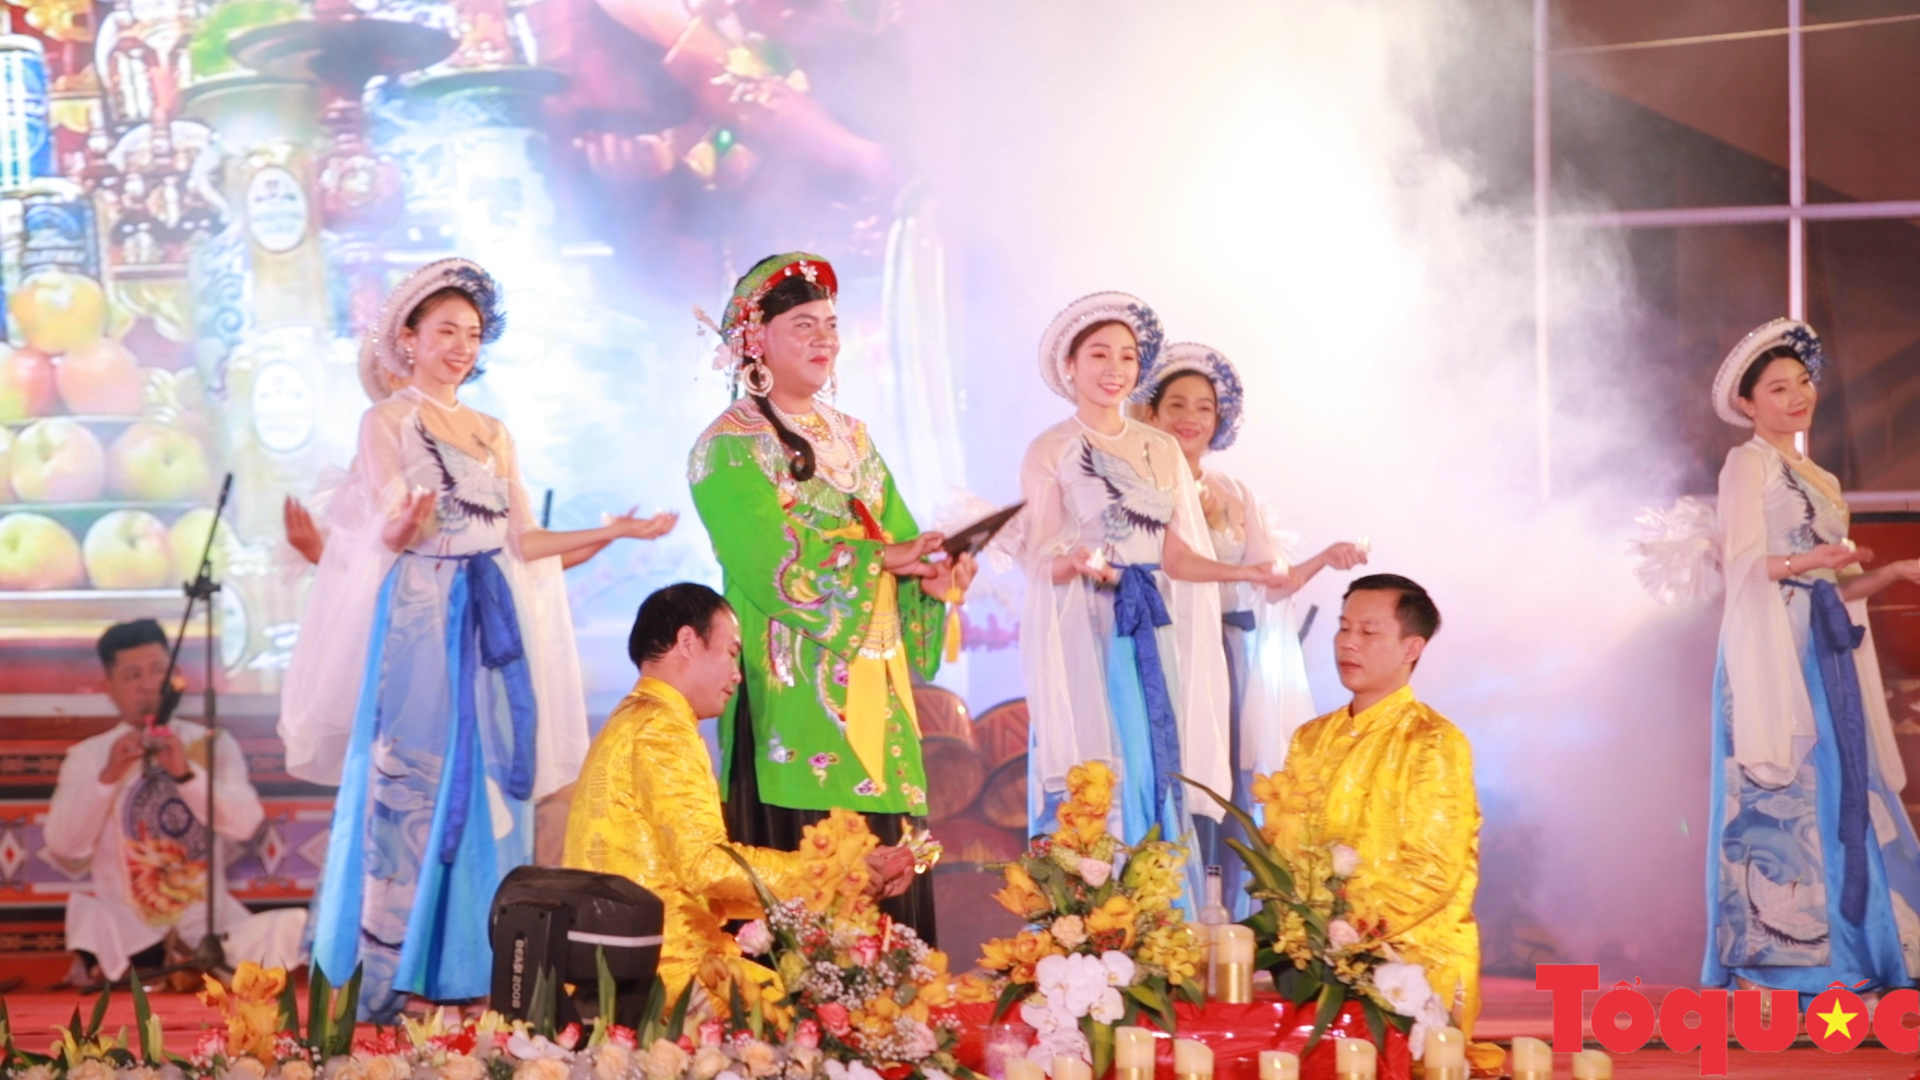 Khai mạc Liên hoan Diễn xướng dân gian văn hóa các dân tộc khu vực Trường Sơn - Tây Nguyên lần III năm 2022 - Ảnh 3.